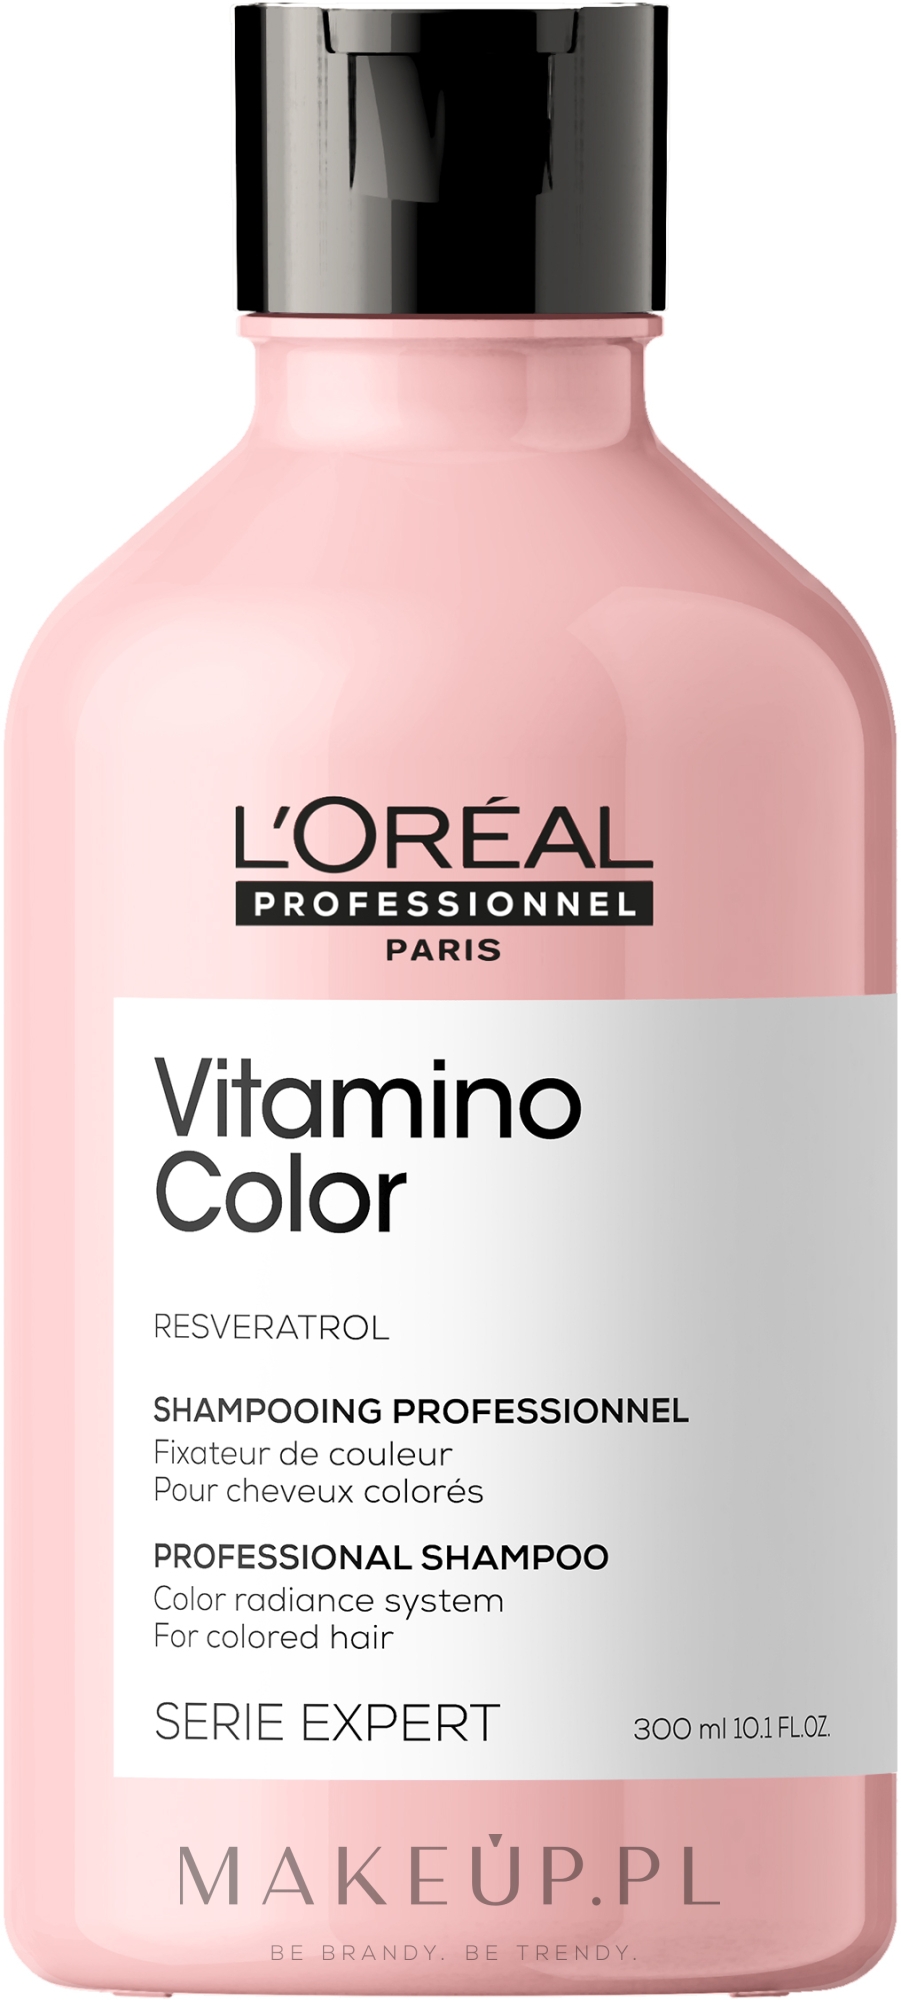 Witaminowy szampon do włosów farbowanych - L'Oreal Professionnel Serie Expert Vitamino Color Resveratrol Shampoo — Zdjęcie 300 ml NEW